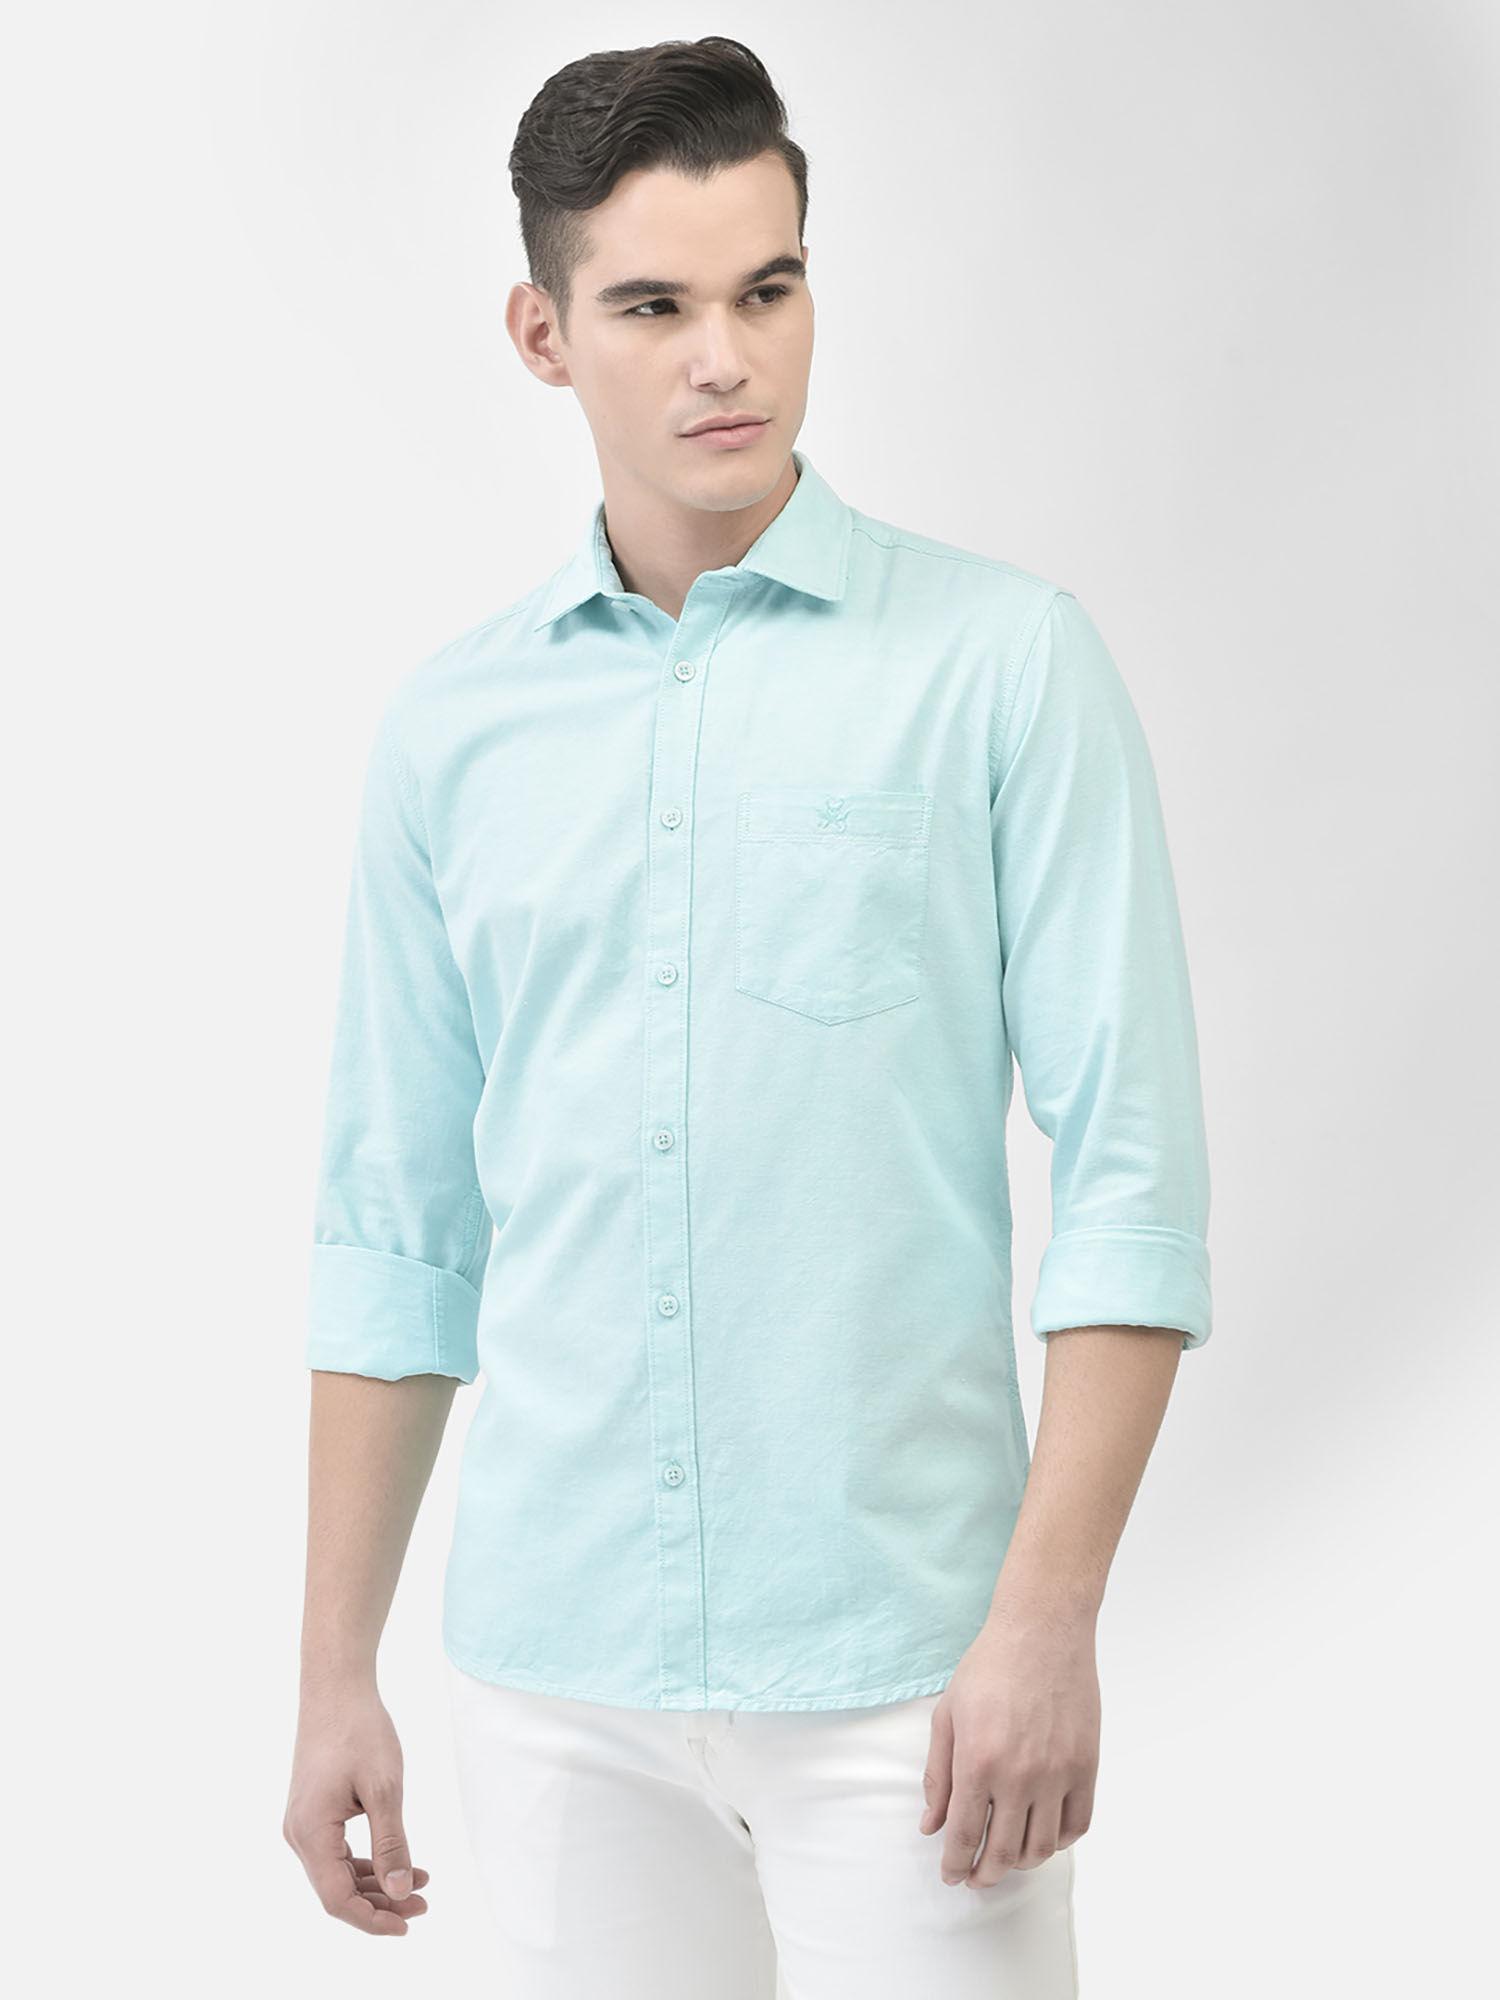 men's-mint-green-shirt